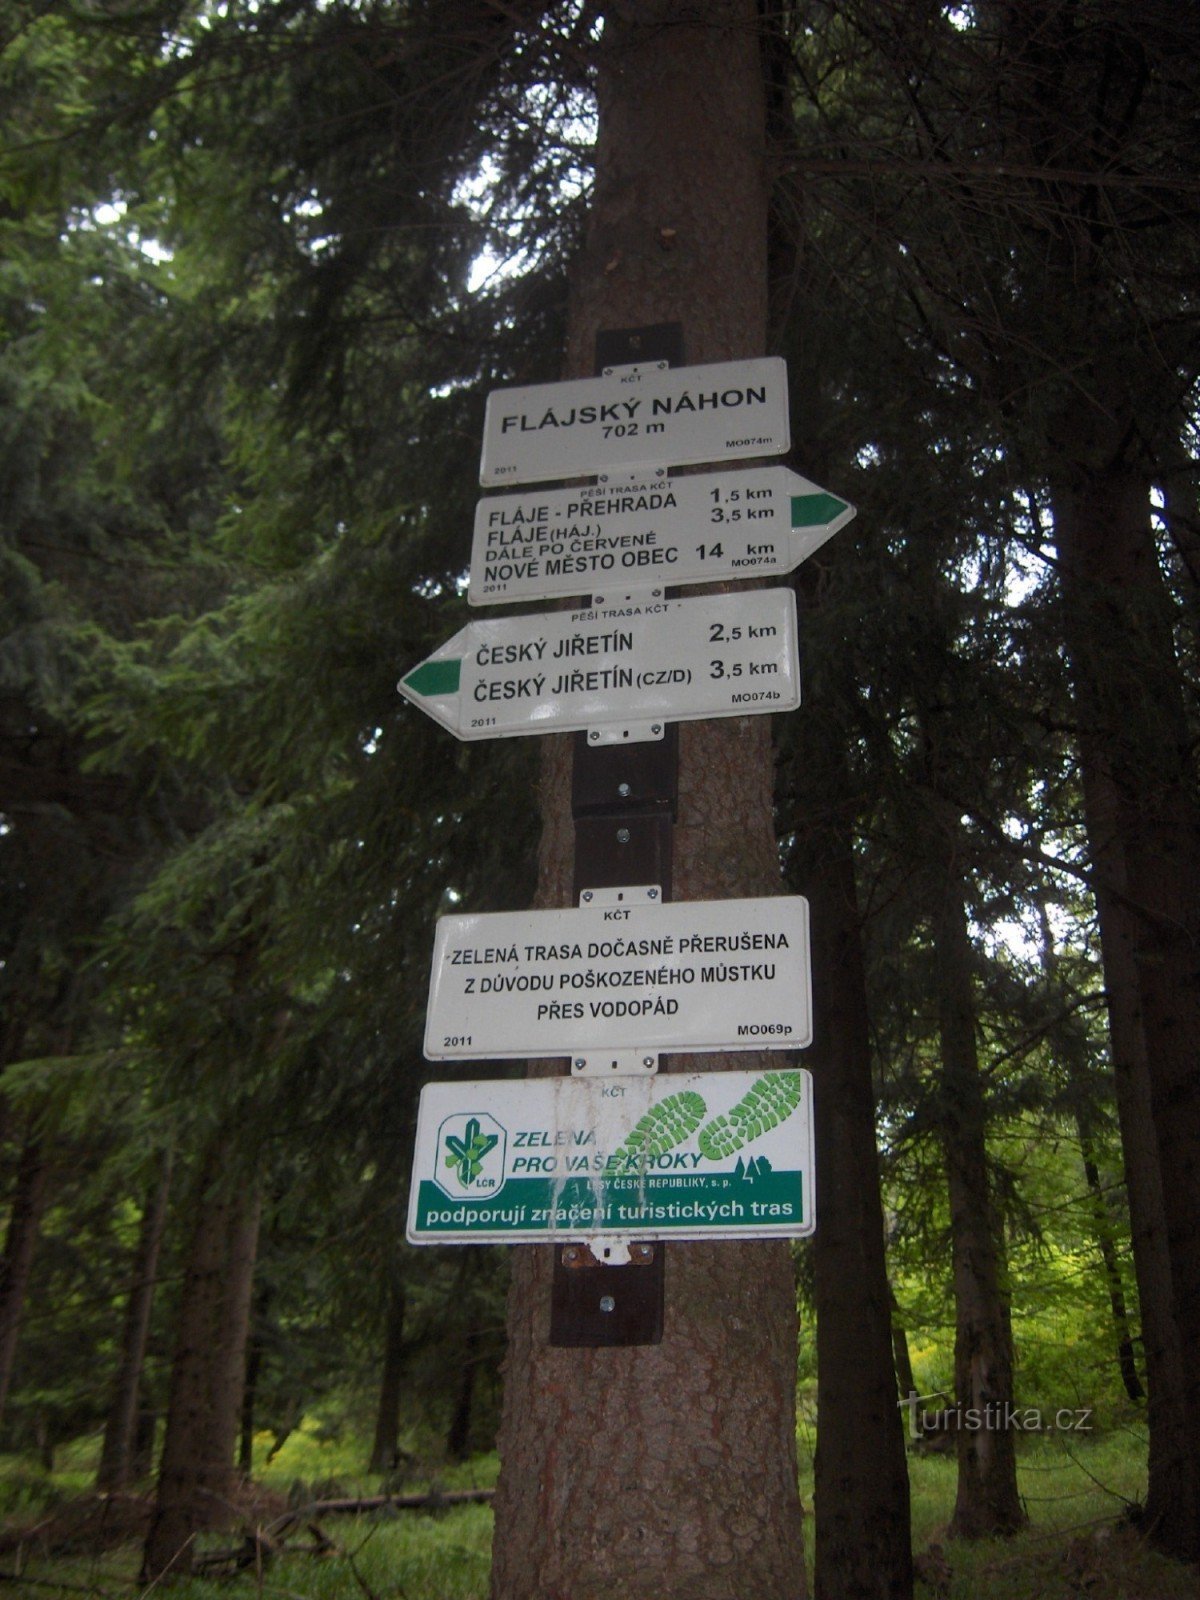 panneaux touristiques